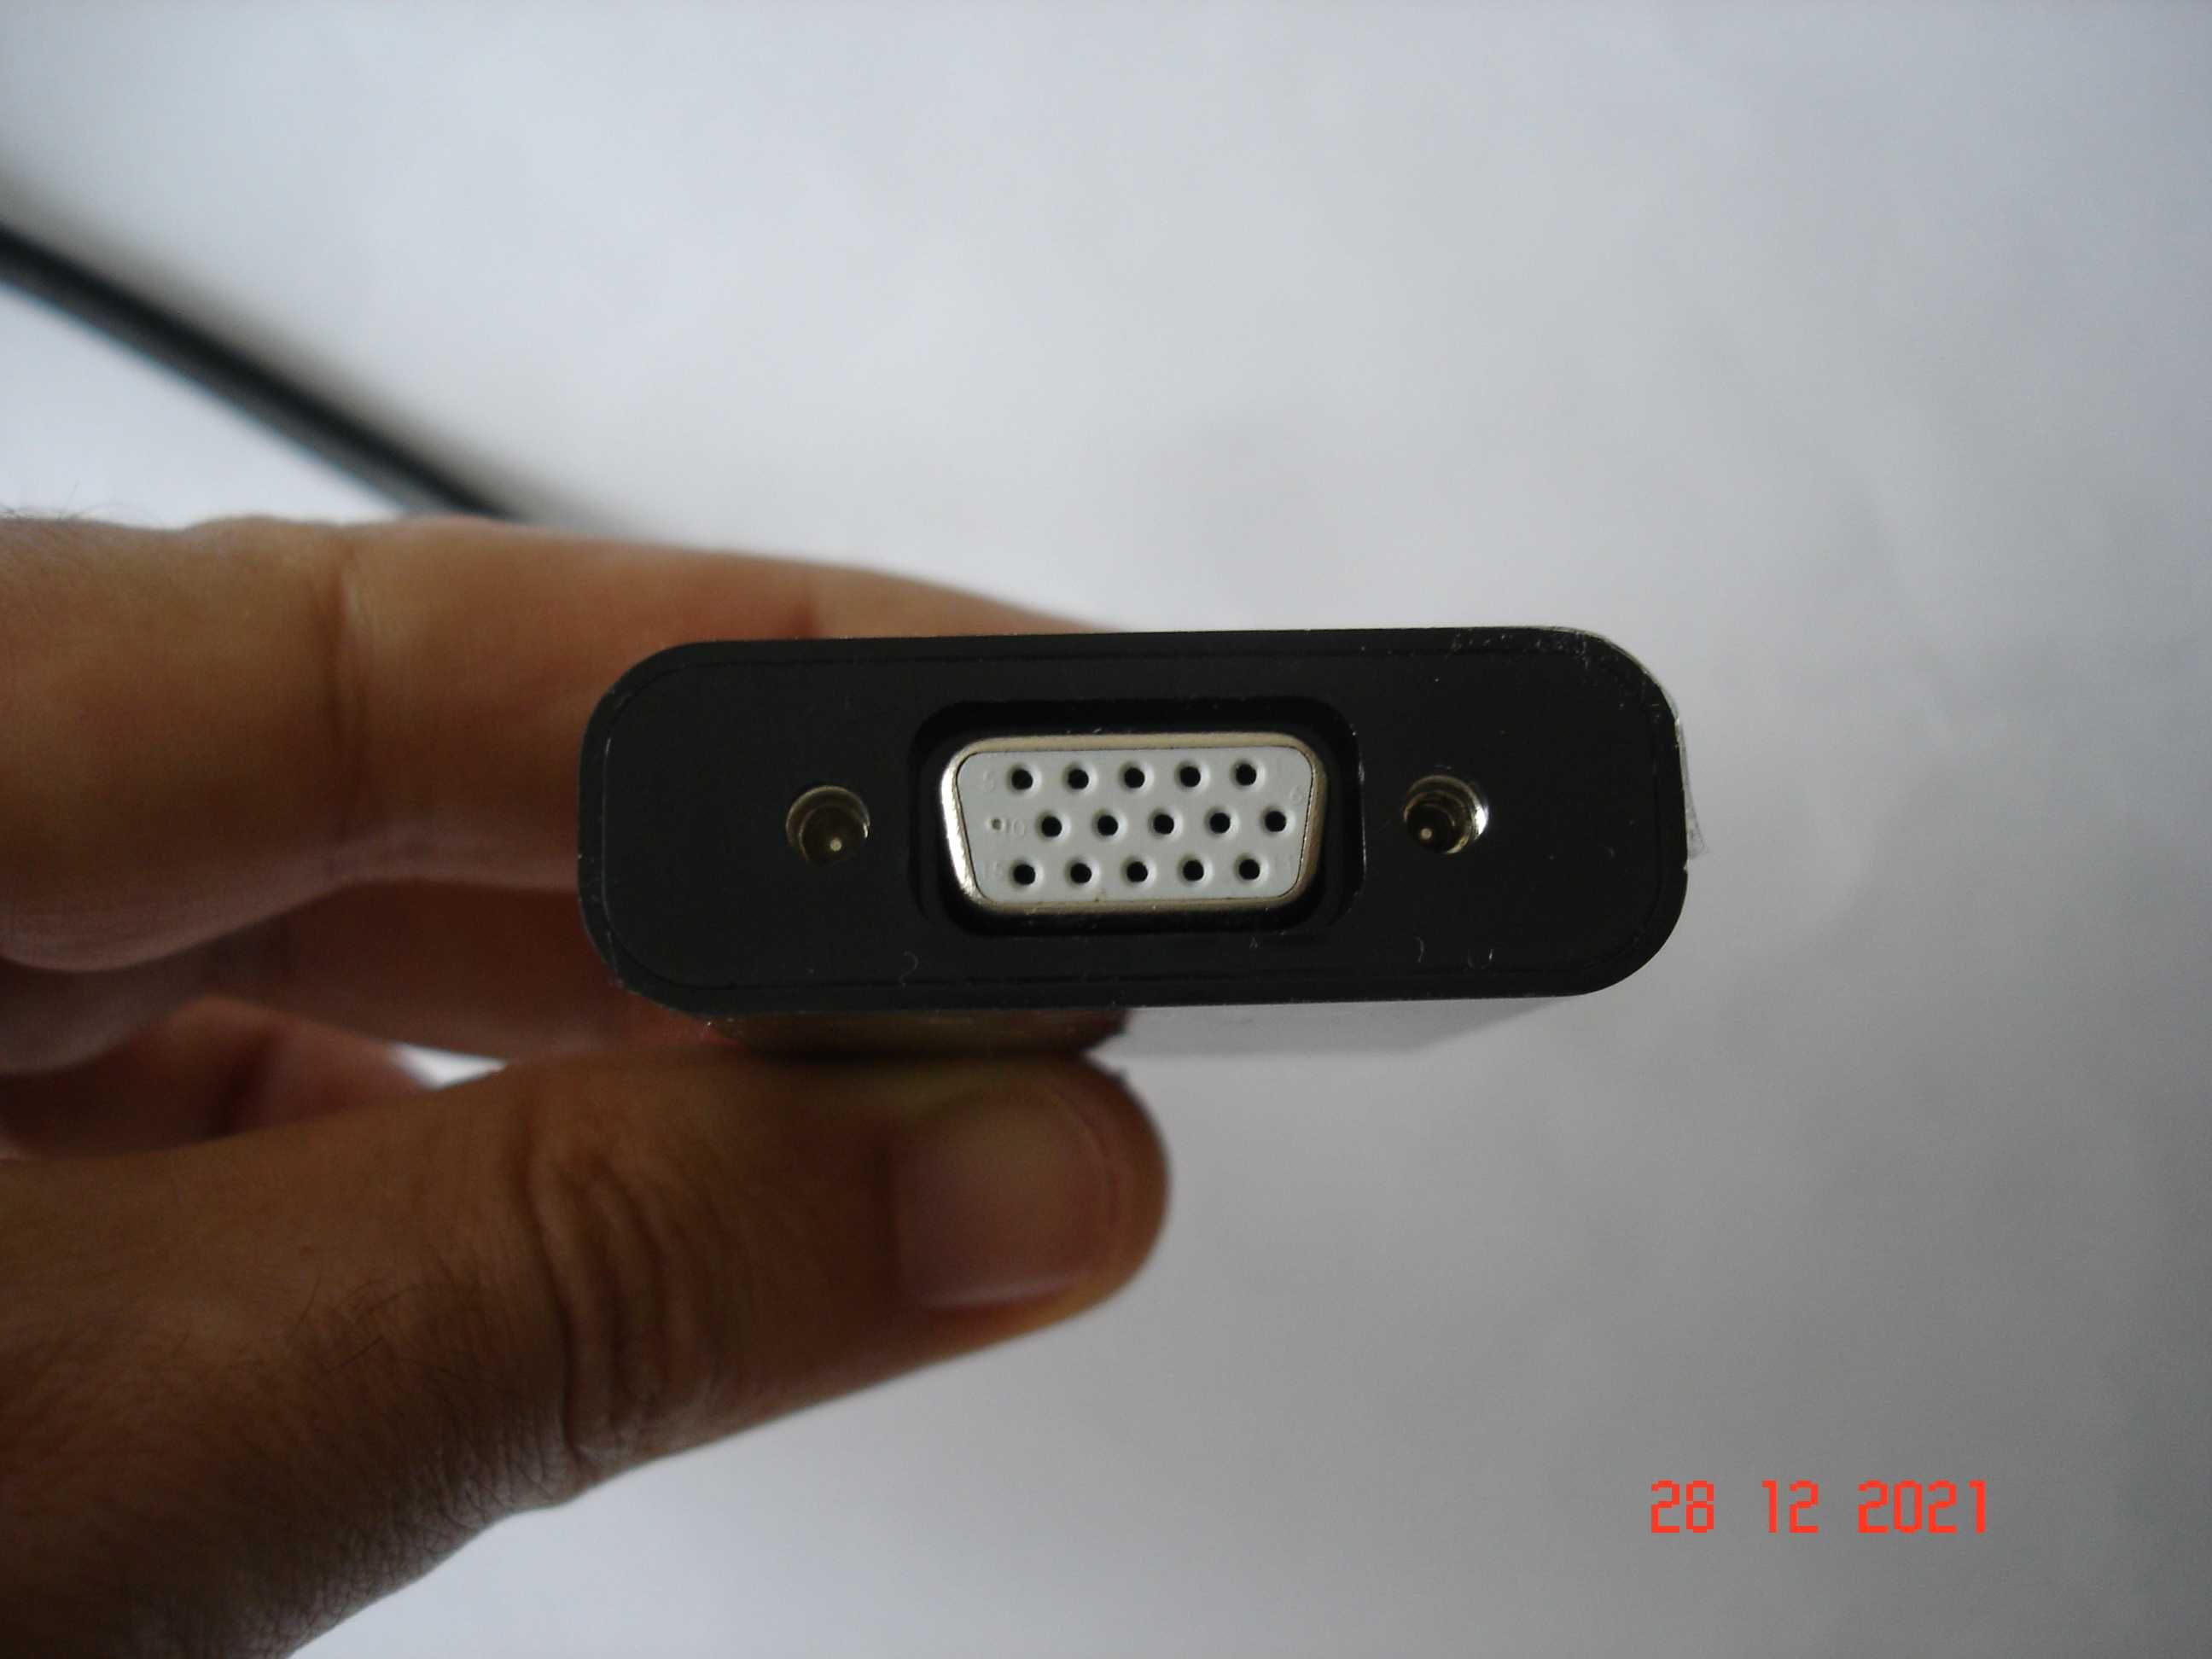 LIGUE 2 MONITORES AO SEU PC - Conversor saida USB para VGA